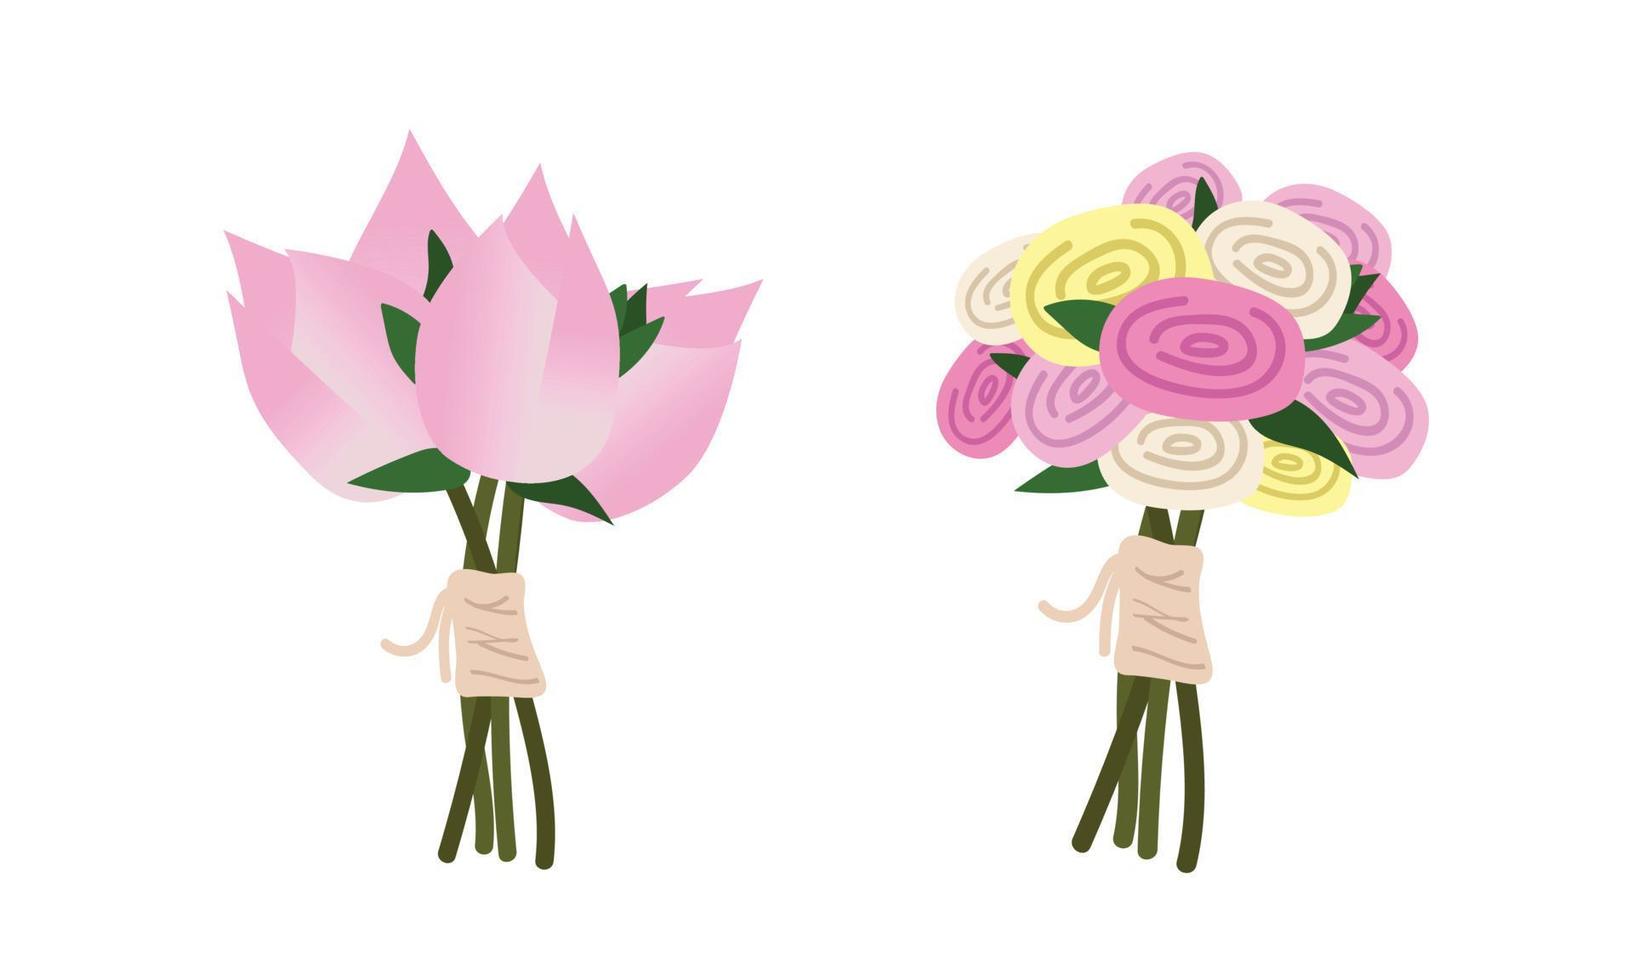 ensemble vectoriel de clipart de bouquets de mariée mariage vietnamien. bouquet de mariage vietnamien illustration vectorielle plane. lotus, style de dessin animé de bouquet de fleurs roses. concept de cérémonie de mariage traditionnel vietnamien